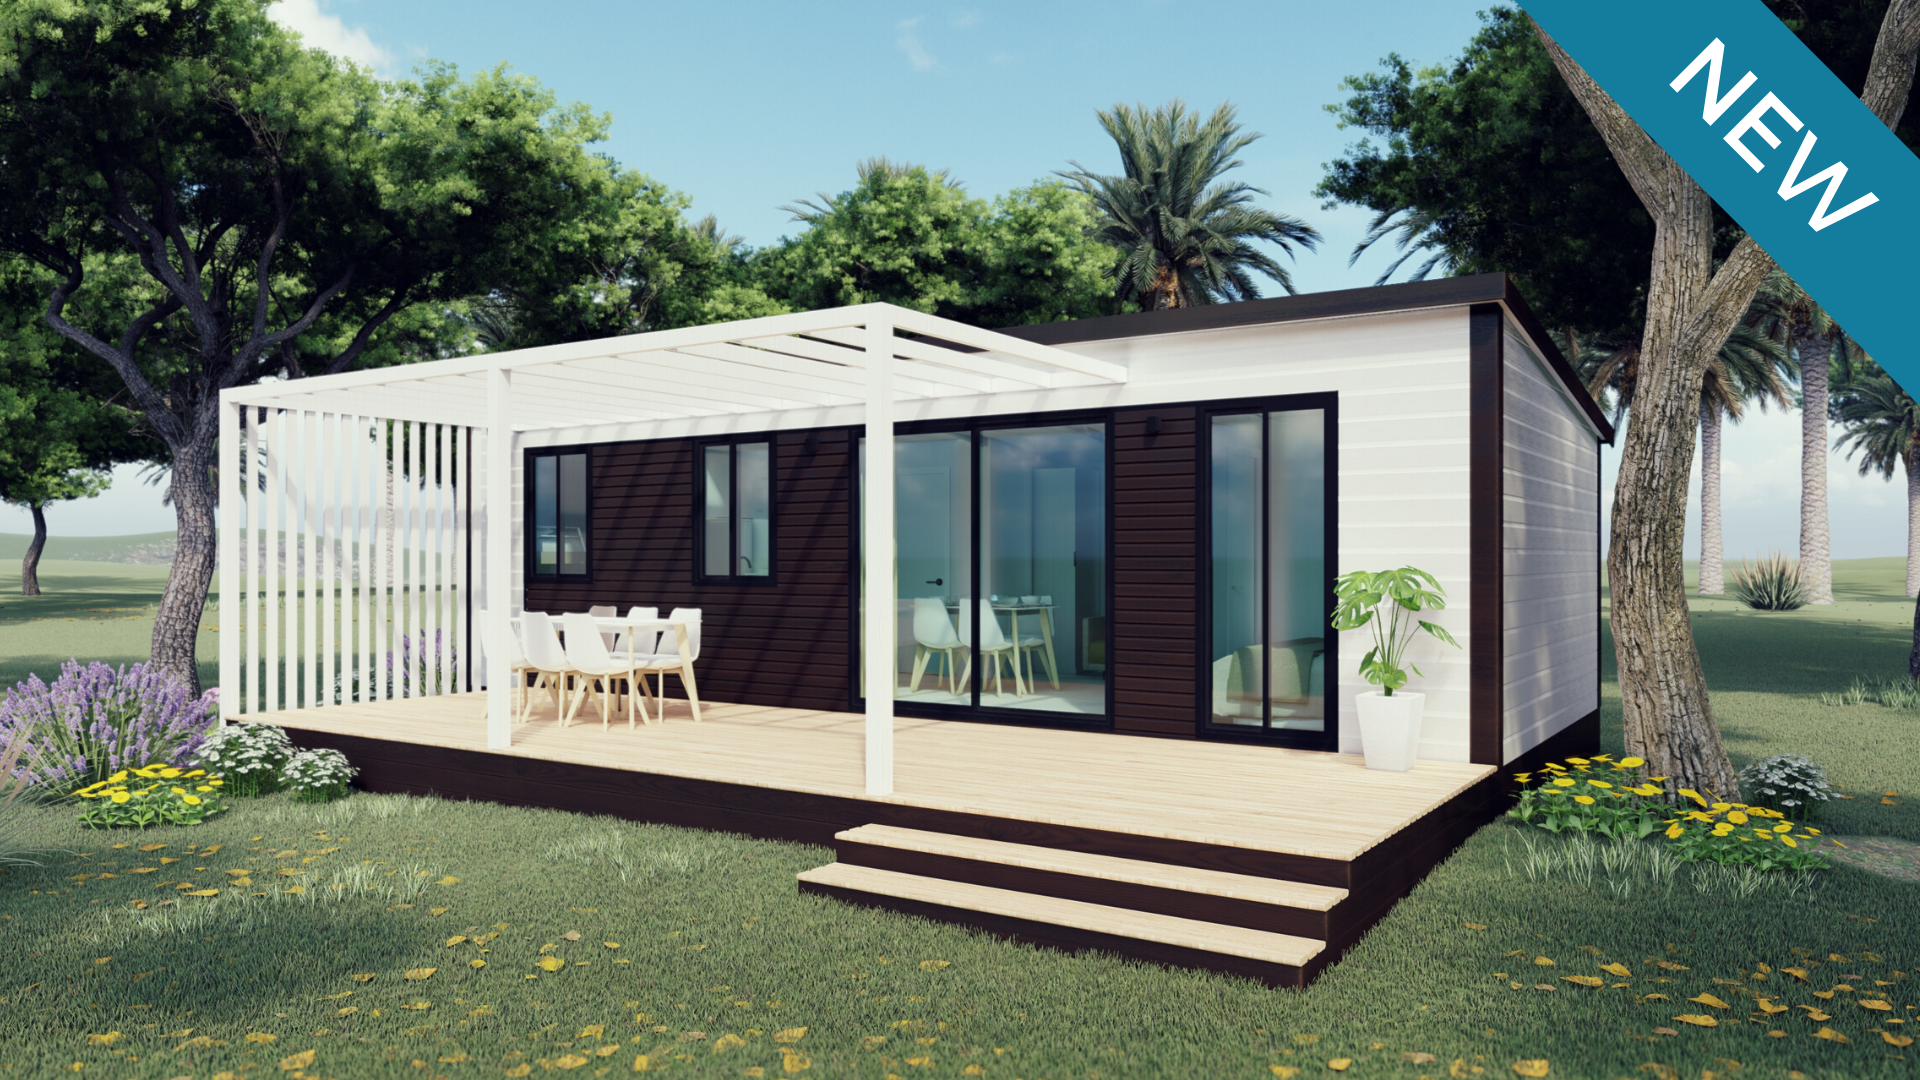 Nuevos bungalows 2020: Noa y Atenea